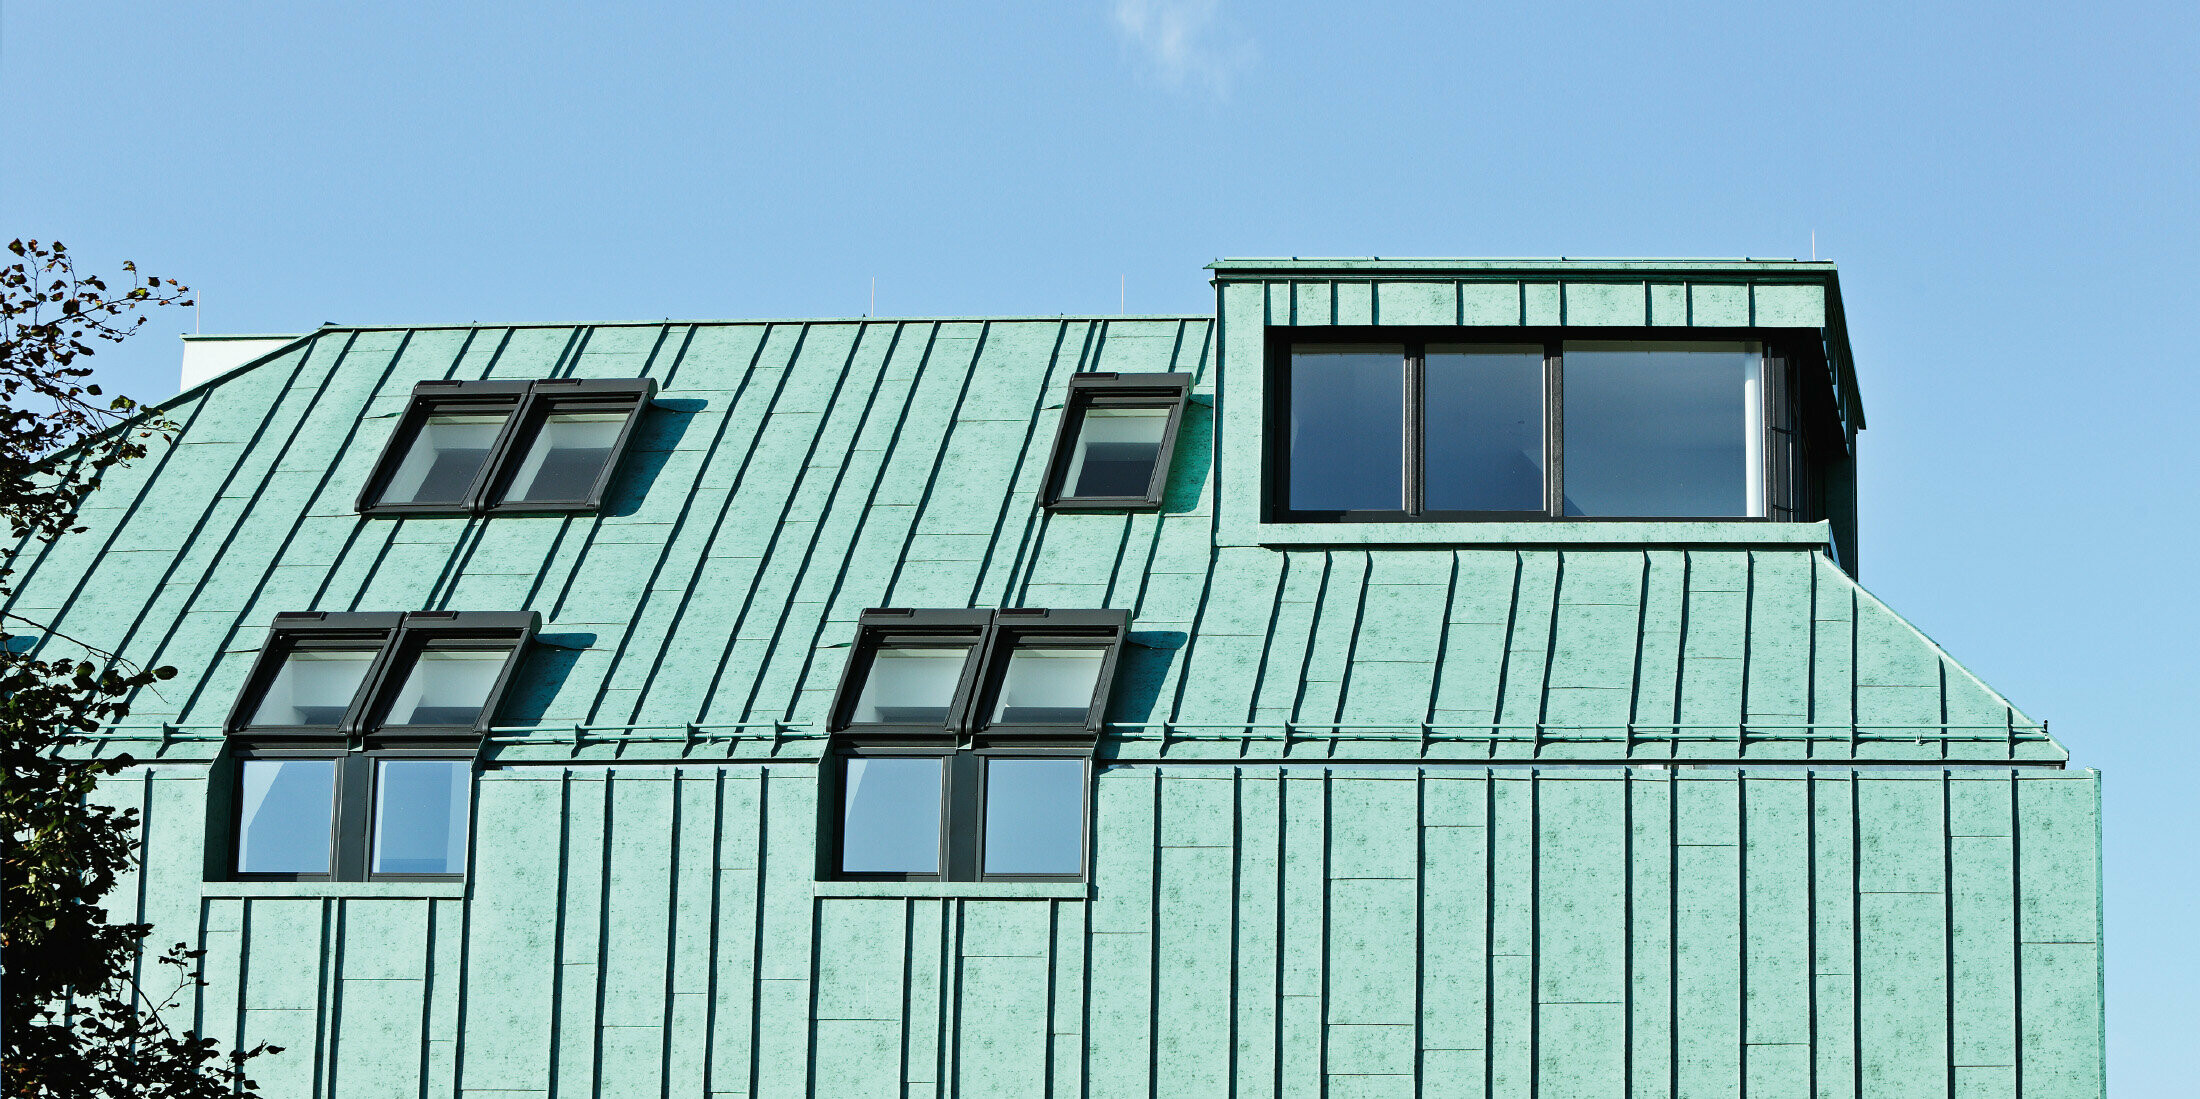 Tag- og facadedesign med PREFALZ i patinagrøn fra PREFA i forskellige panelbredder